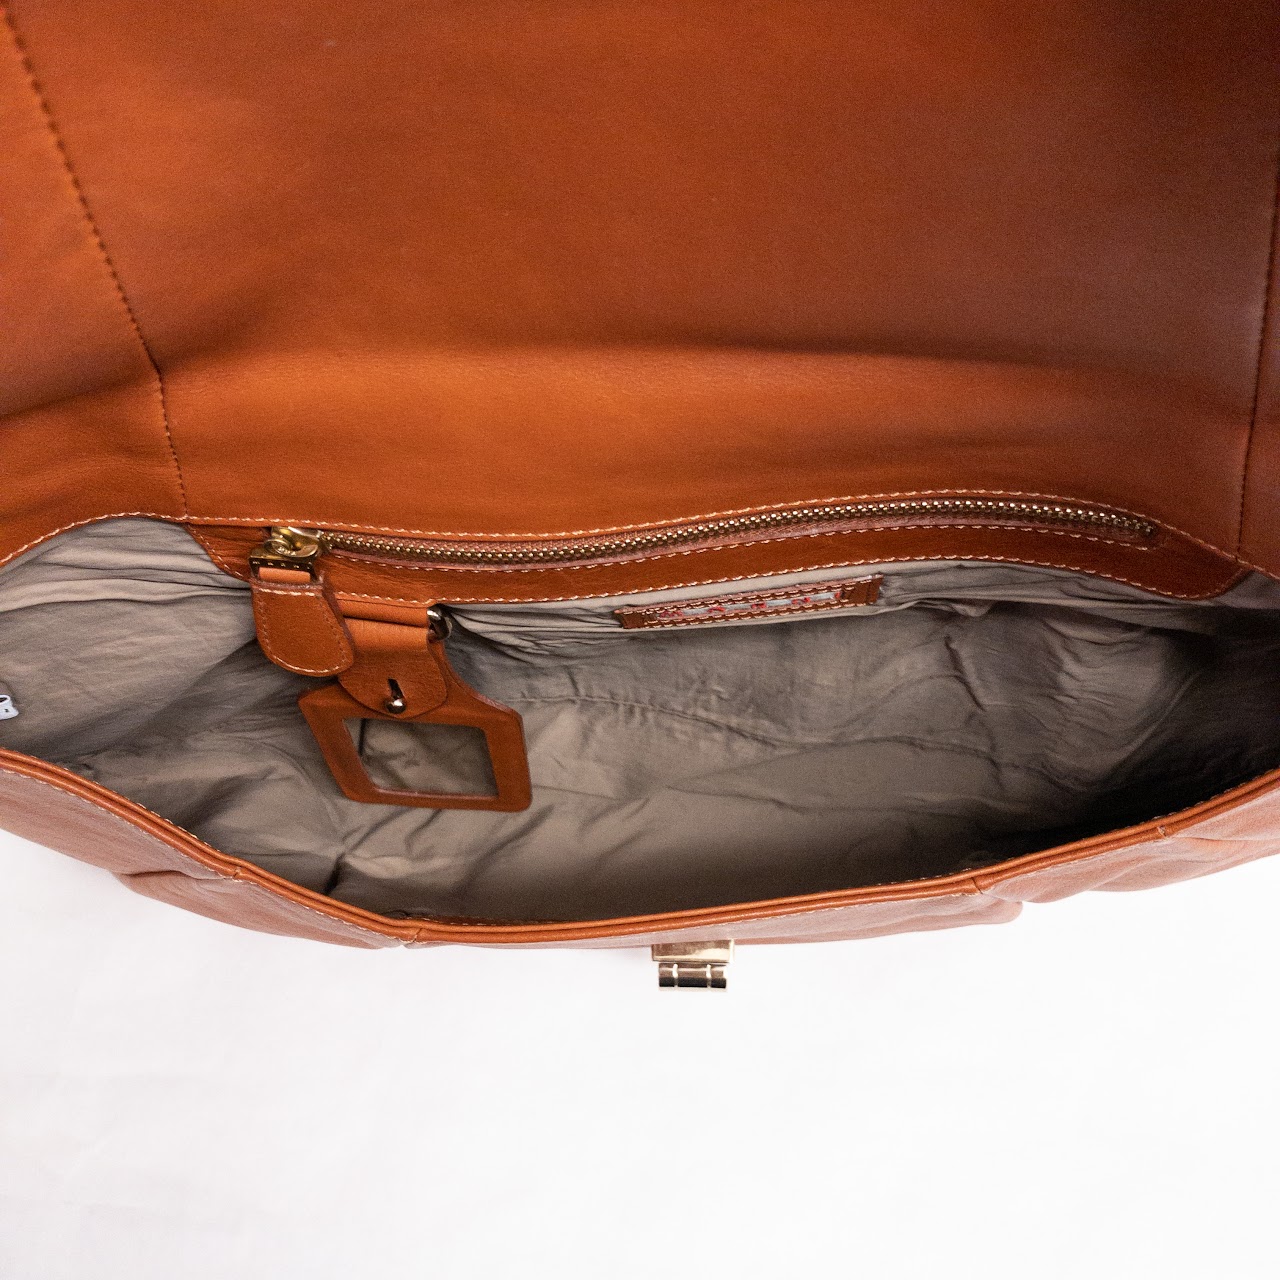 Marni Pleated Leather Handbag